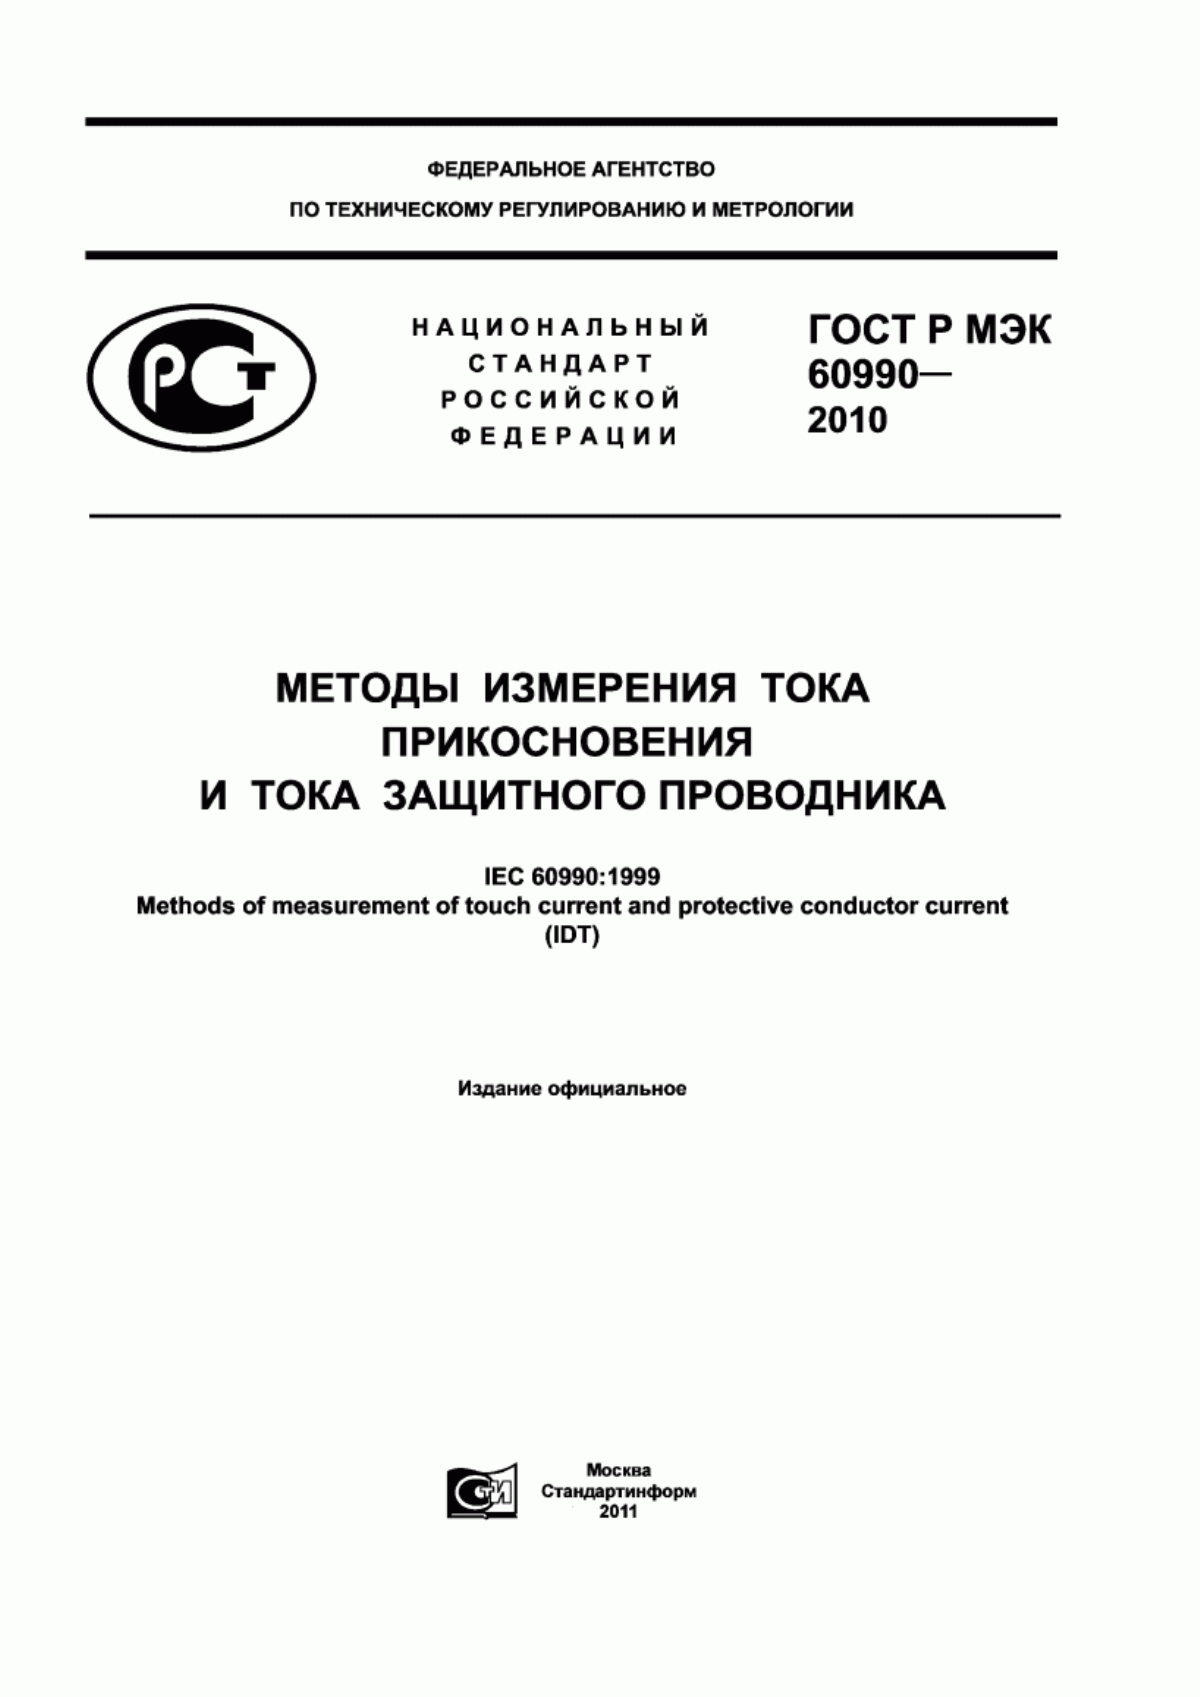 ГОСТ Р МЭК 60990-2010 Методы измерения тока прикосновения и тока защитного проводника